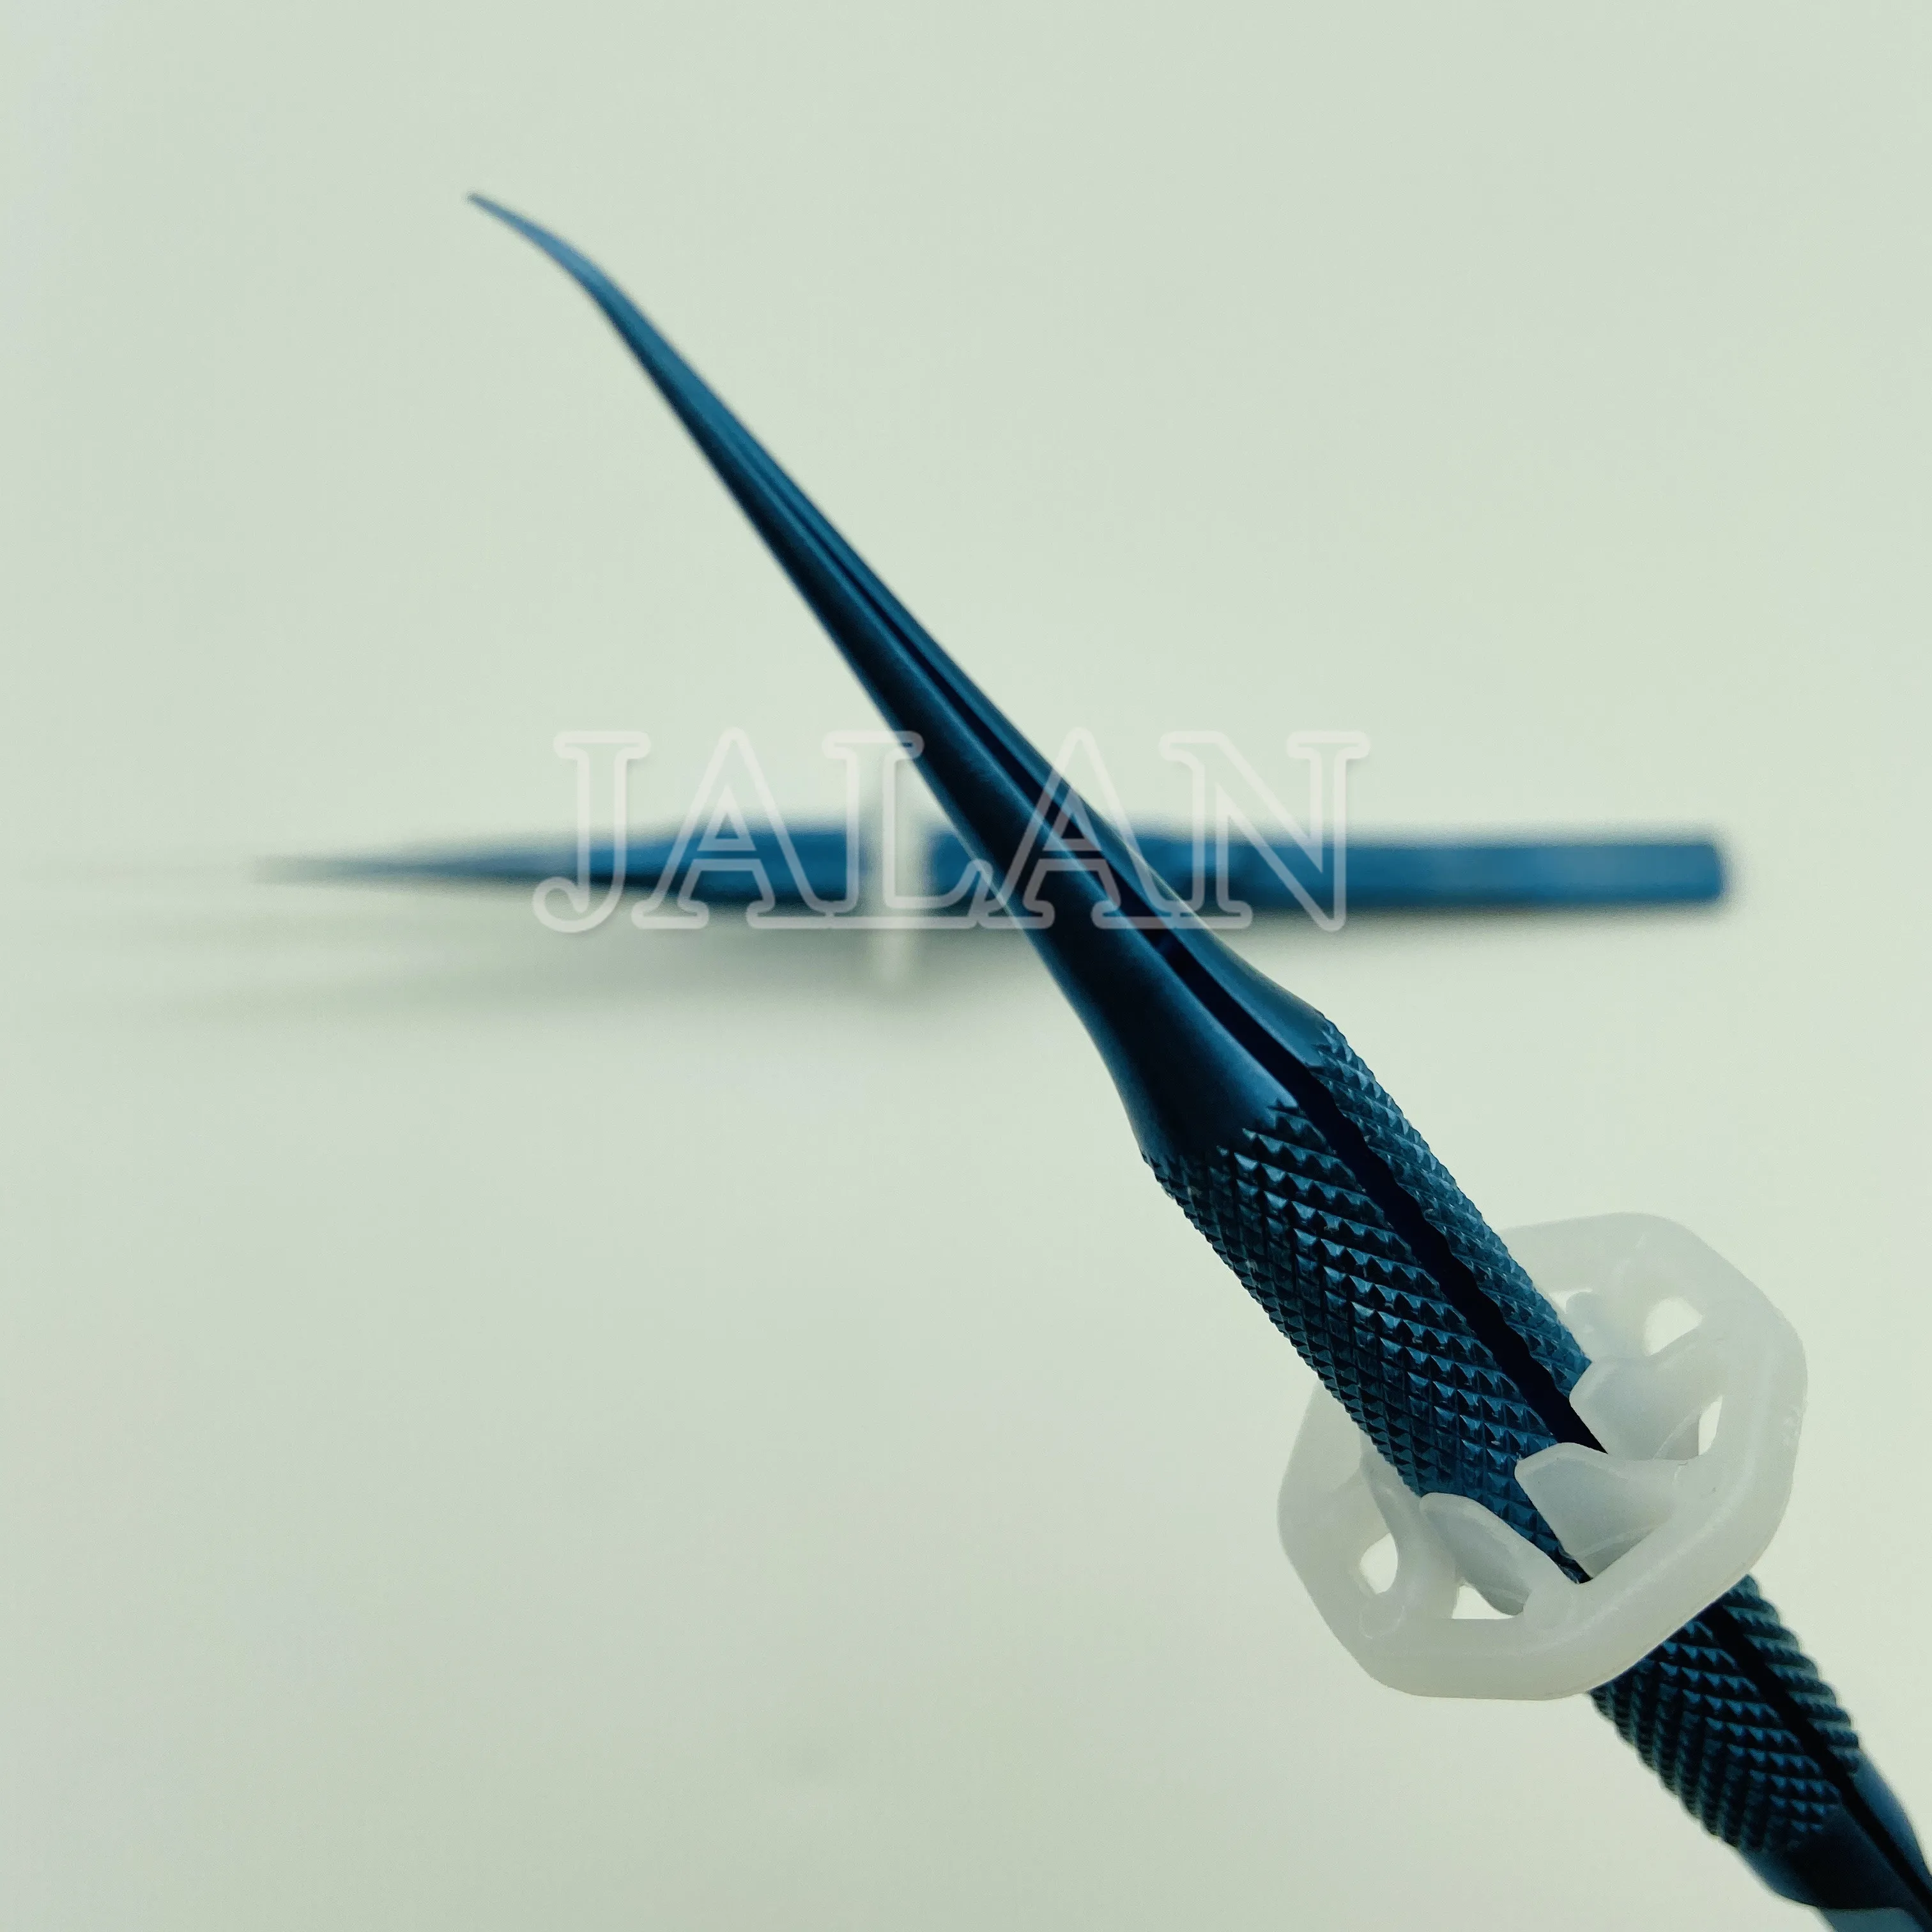 Высокоточные пинцеты из титанового сплава Fly line инструмент для ремонта материнской платы скачок отпечатков пальцев антимагнитные электронные щипчики